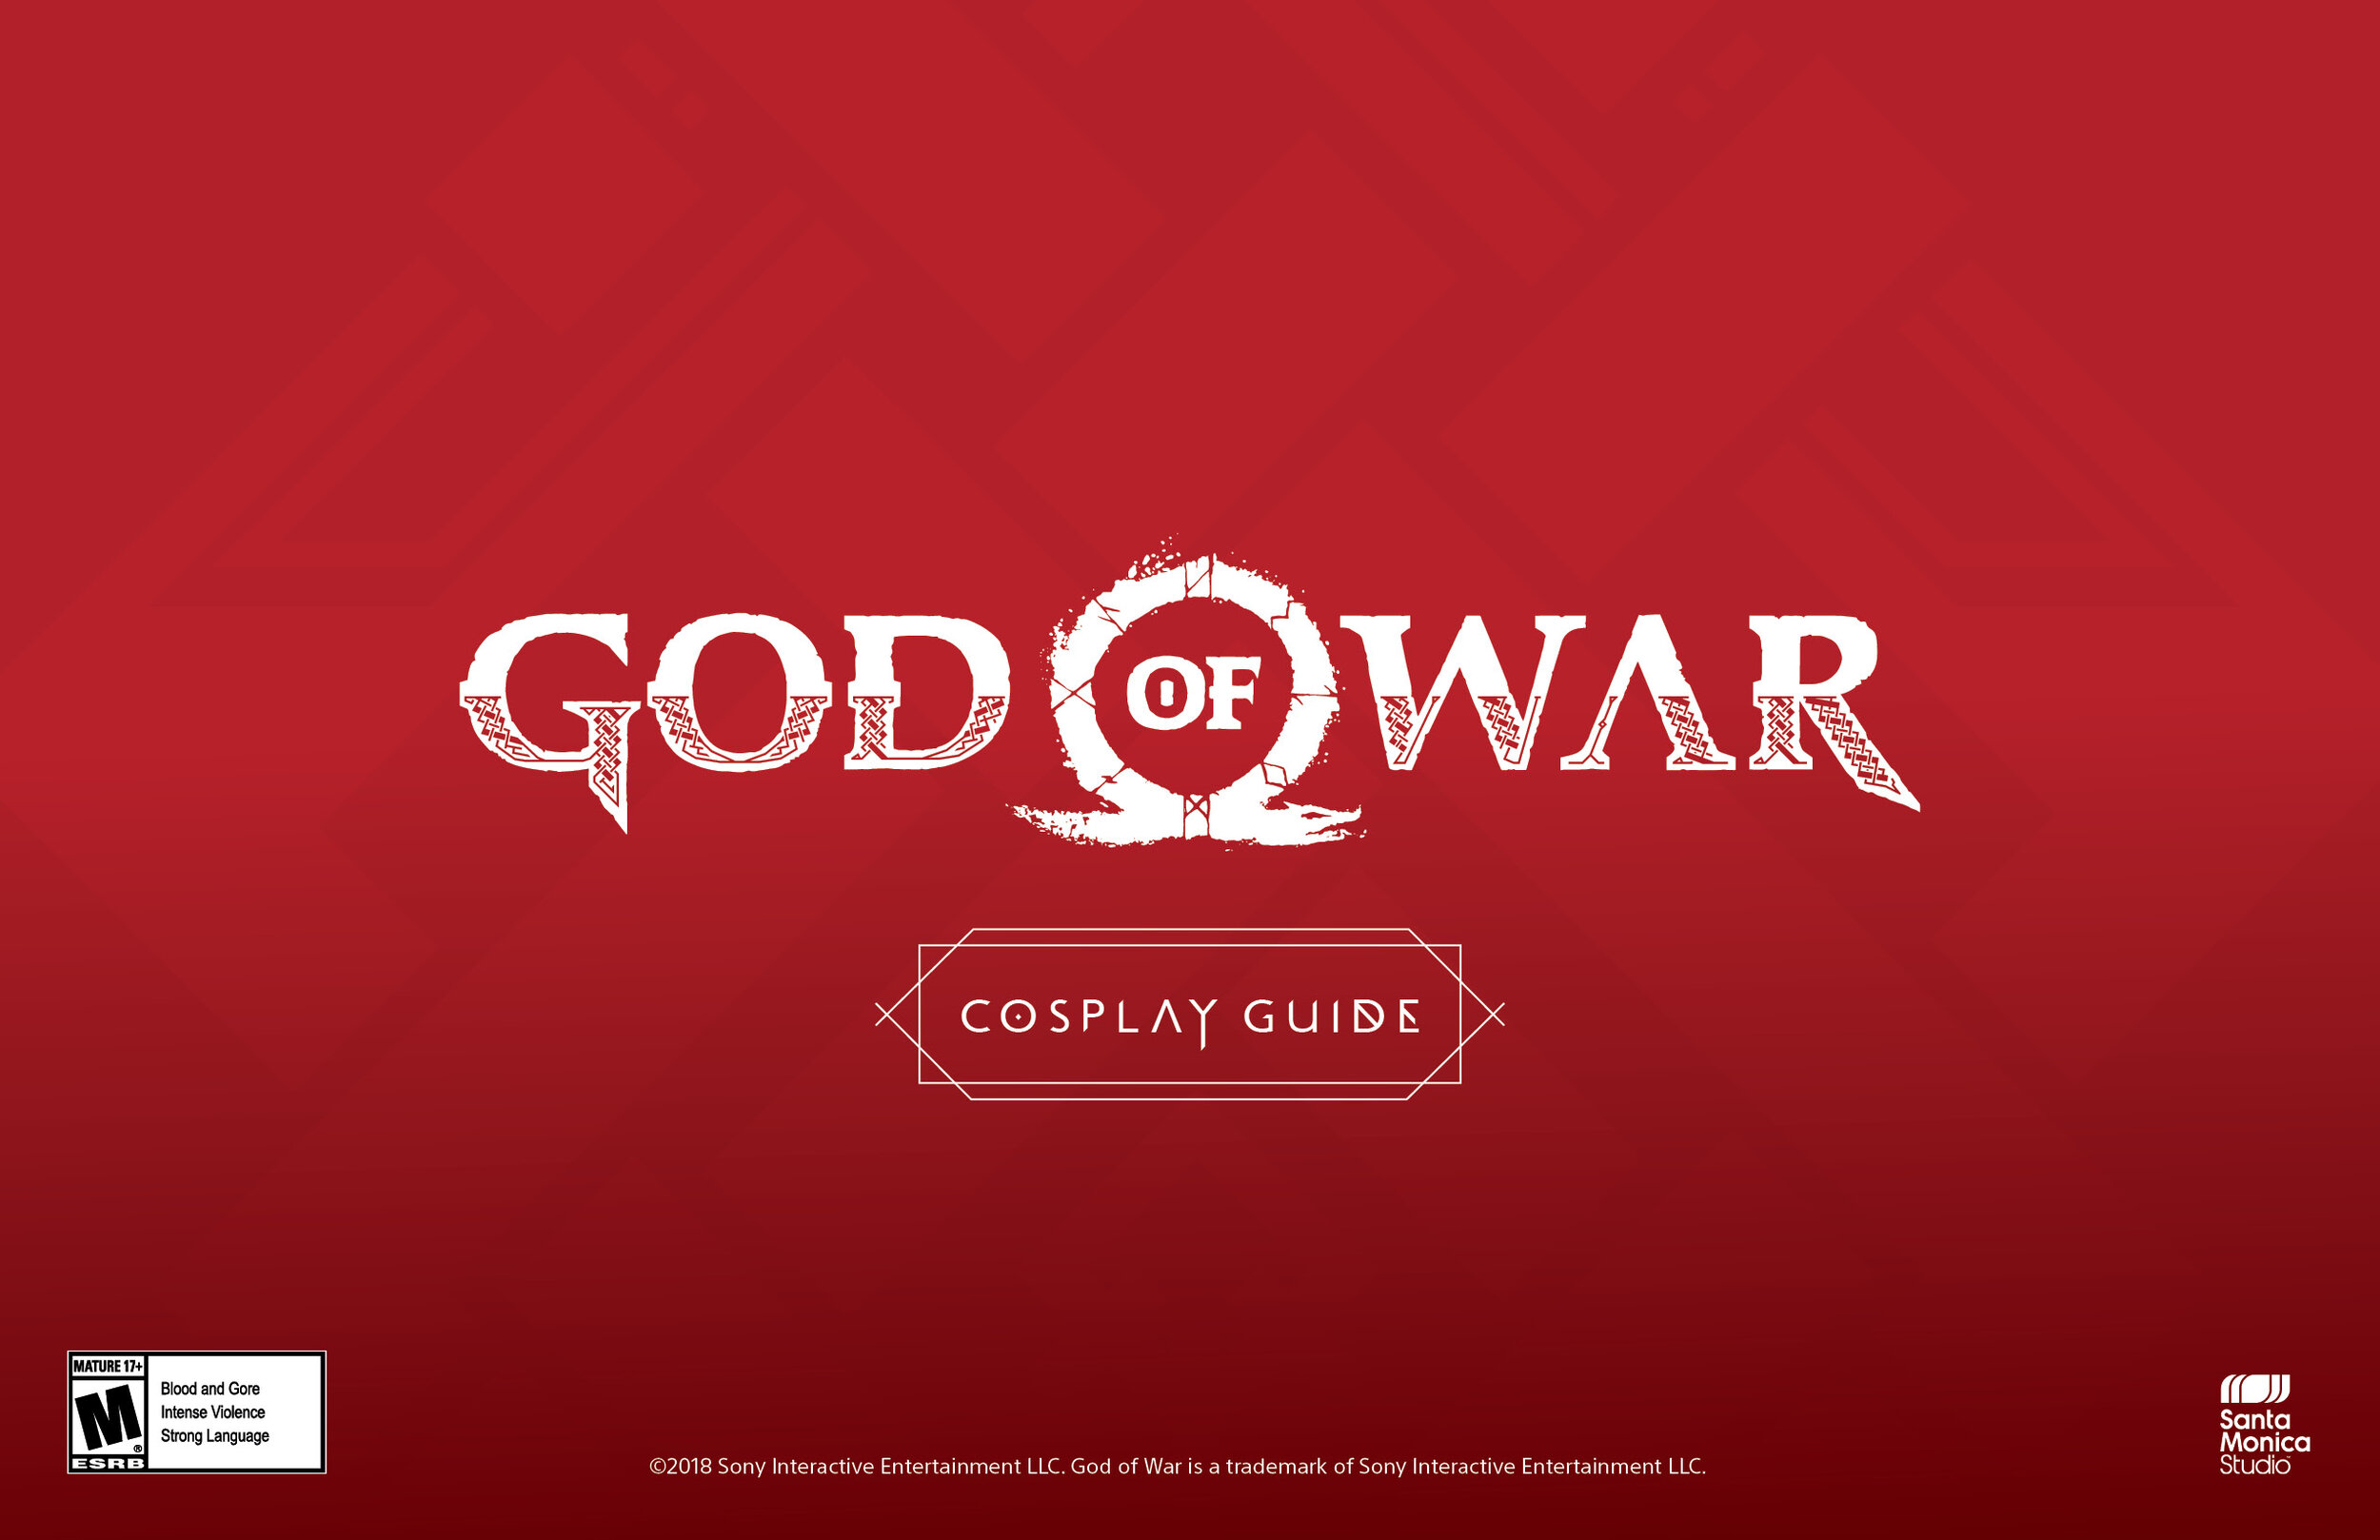 HD god of war logo wallpapers  Peakpx